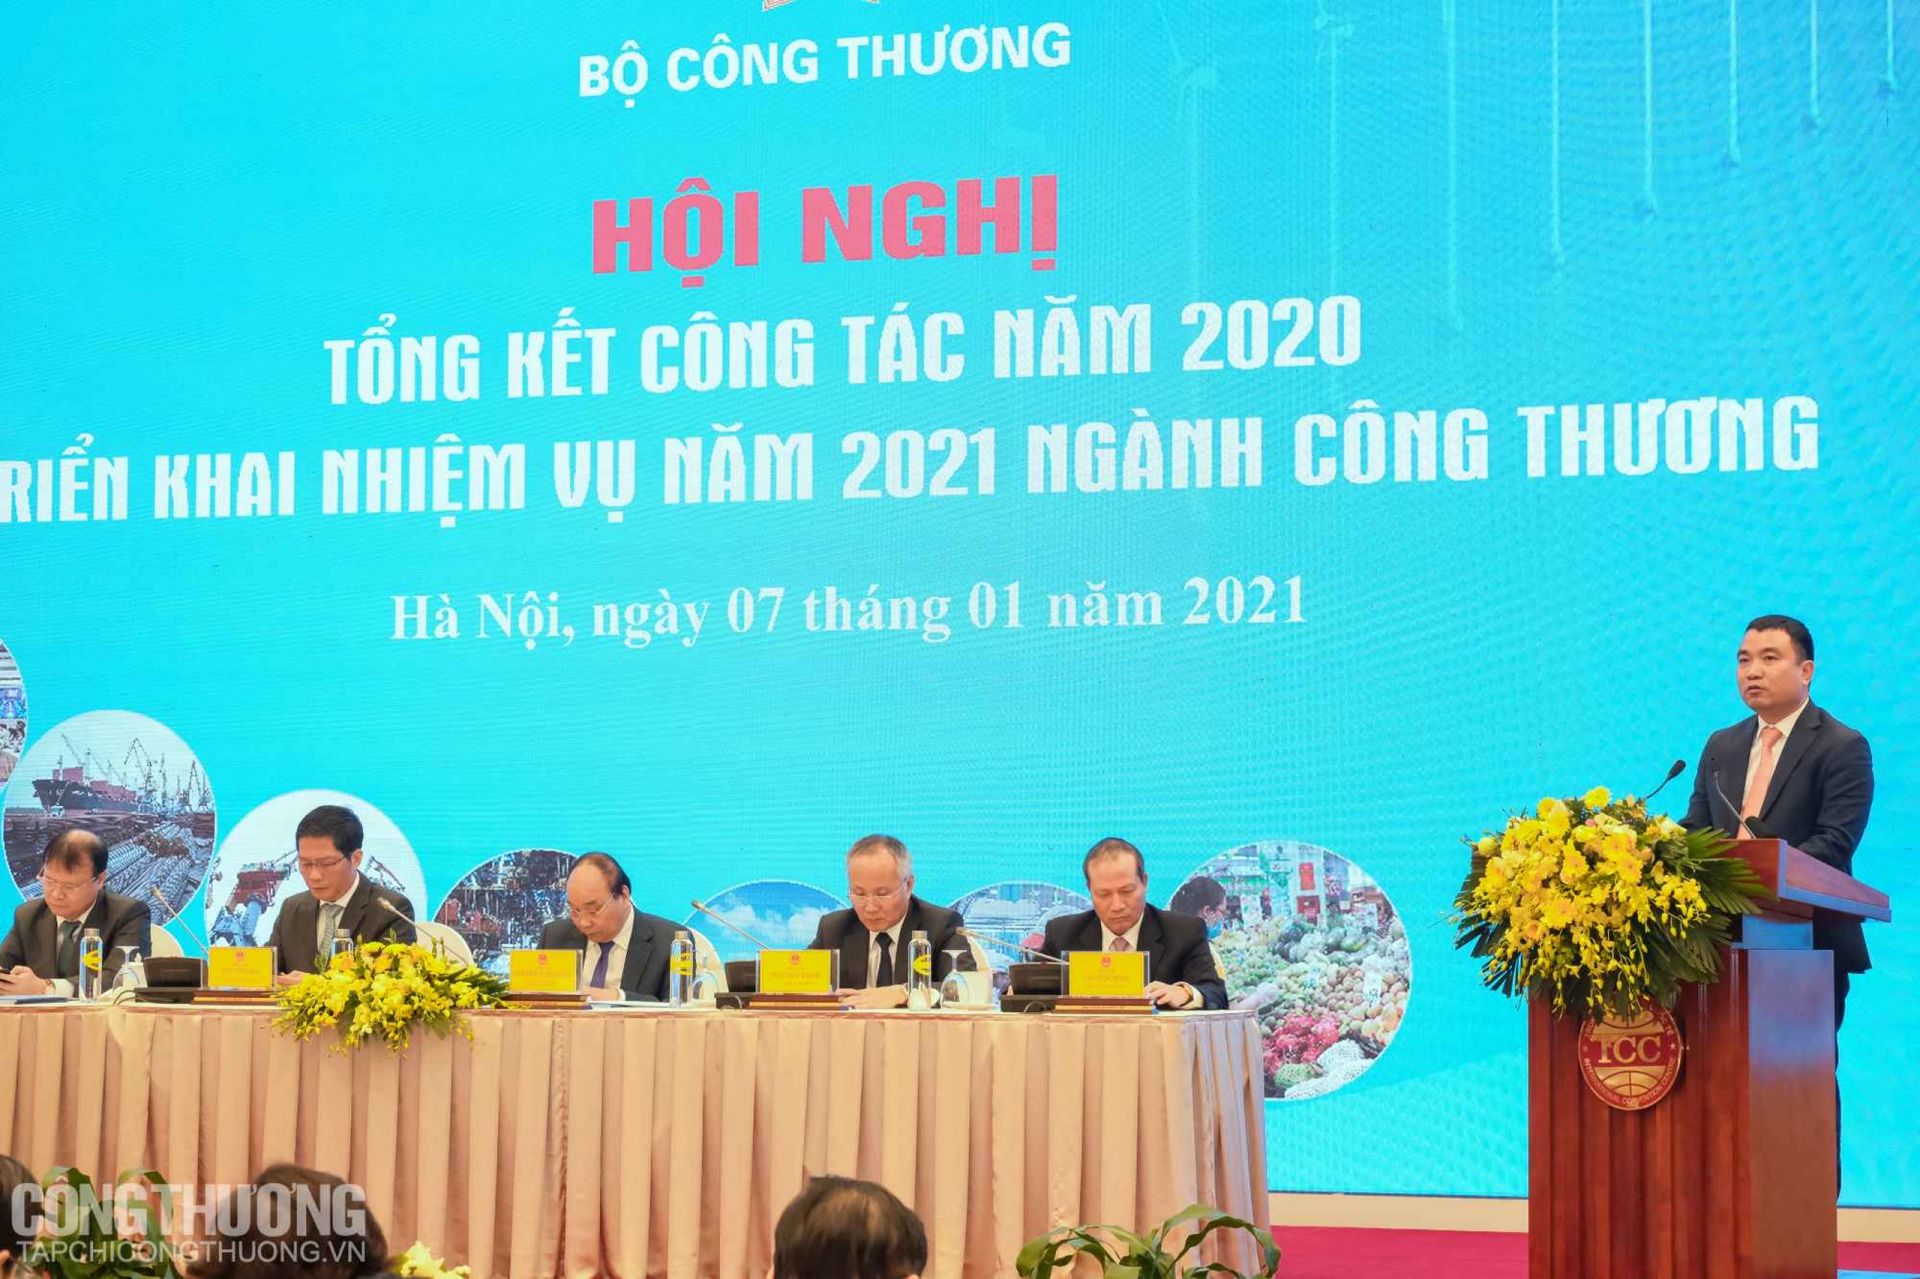 Hội nghị Tổng kết công tác năm 2020 và triển khai nhiệm vụ năm 2021 ngành Công Thương